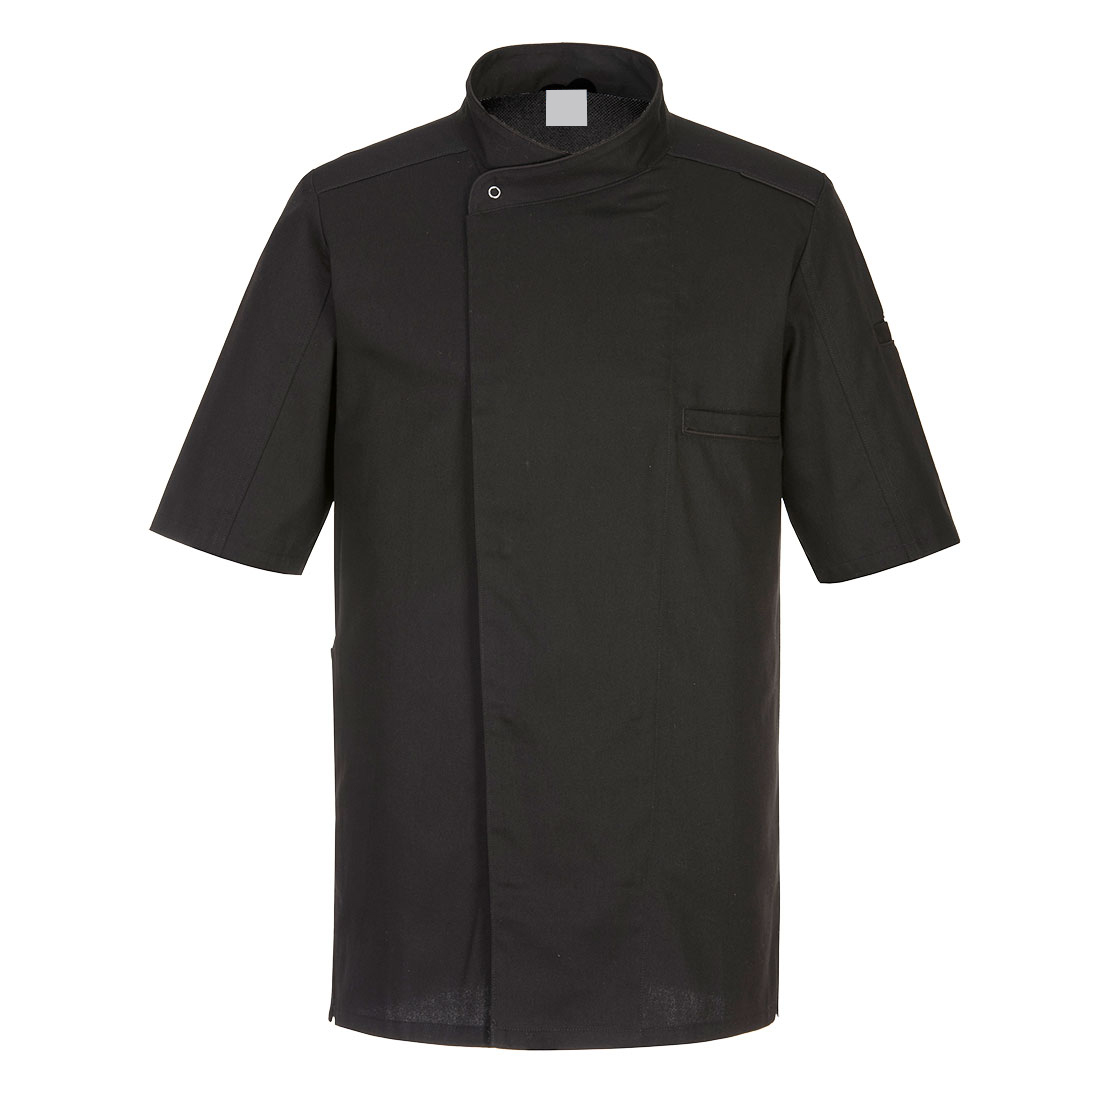 Surrey Chefs Jacket S/S Black